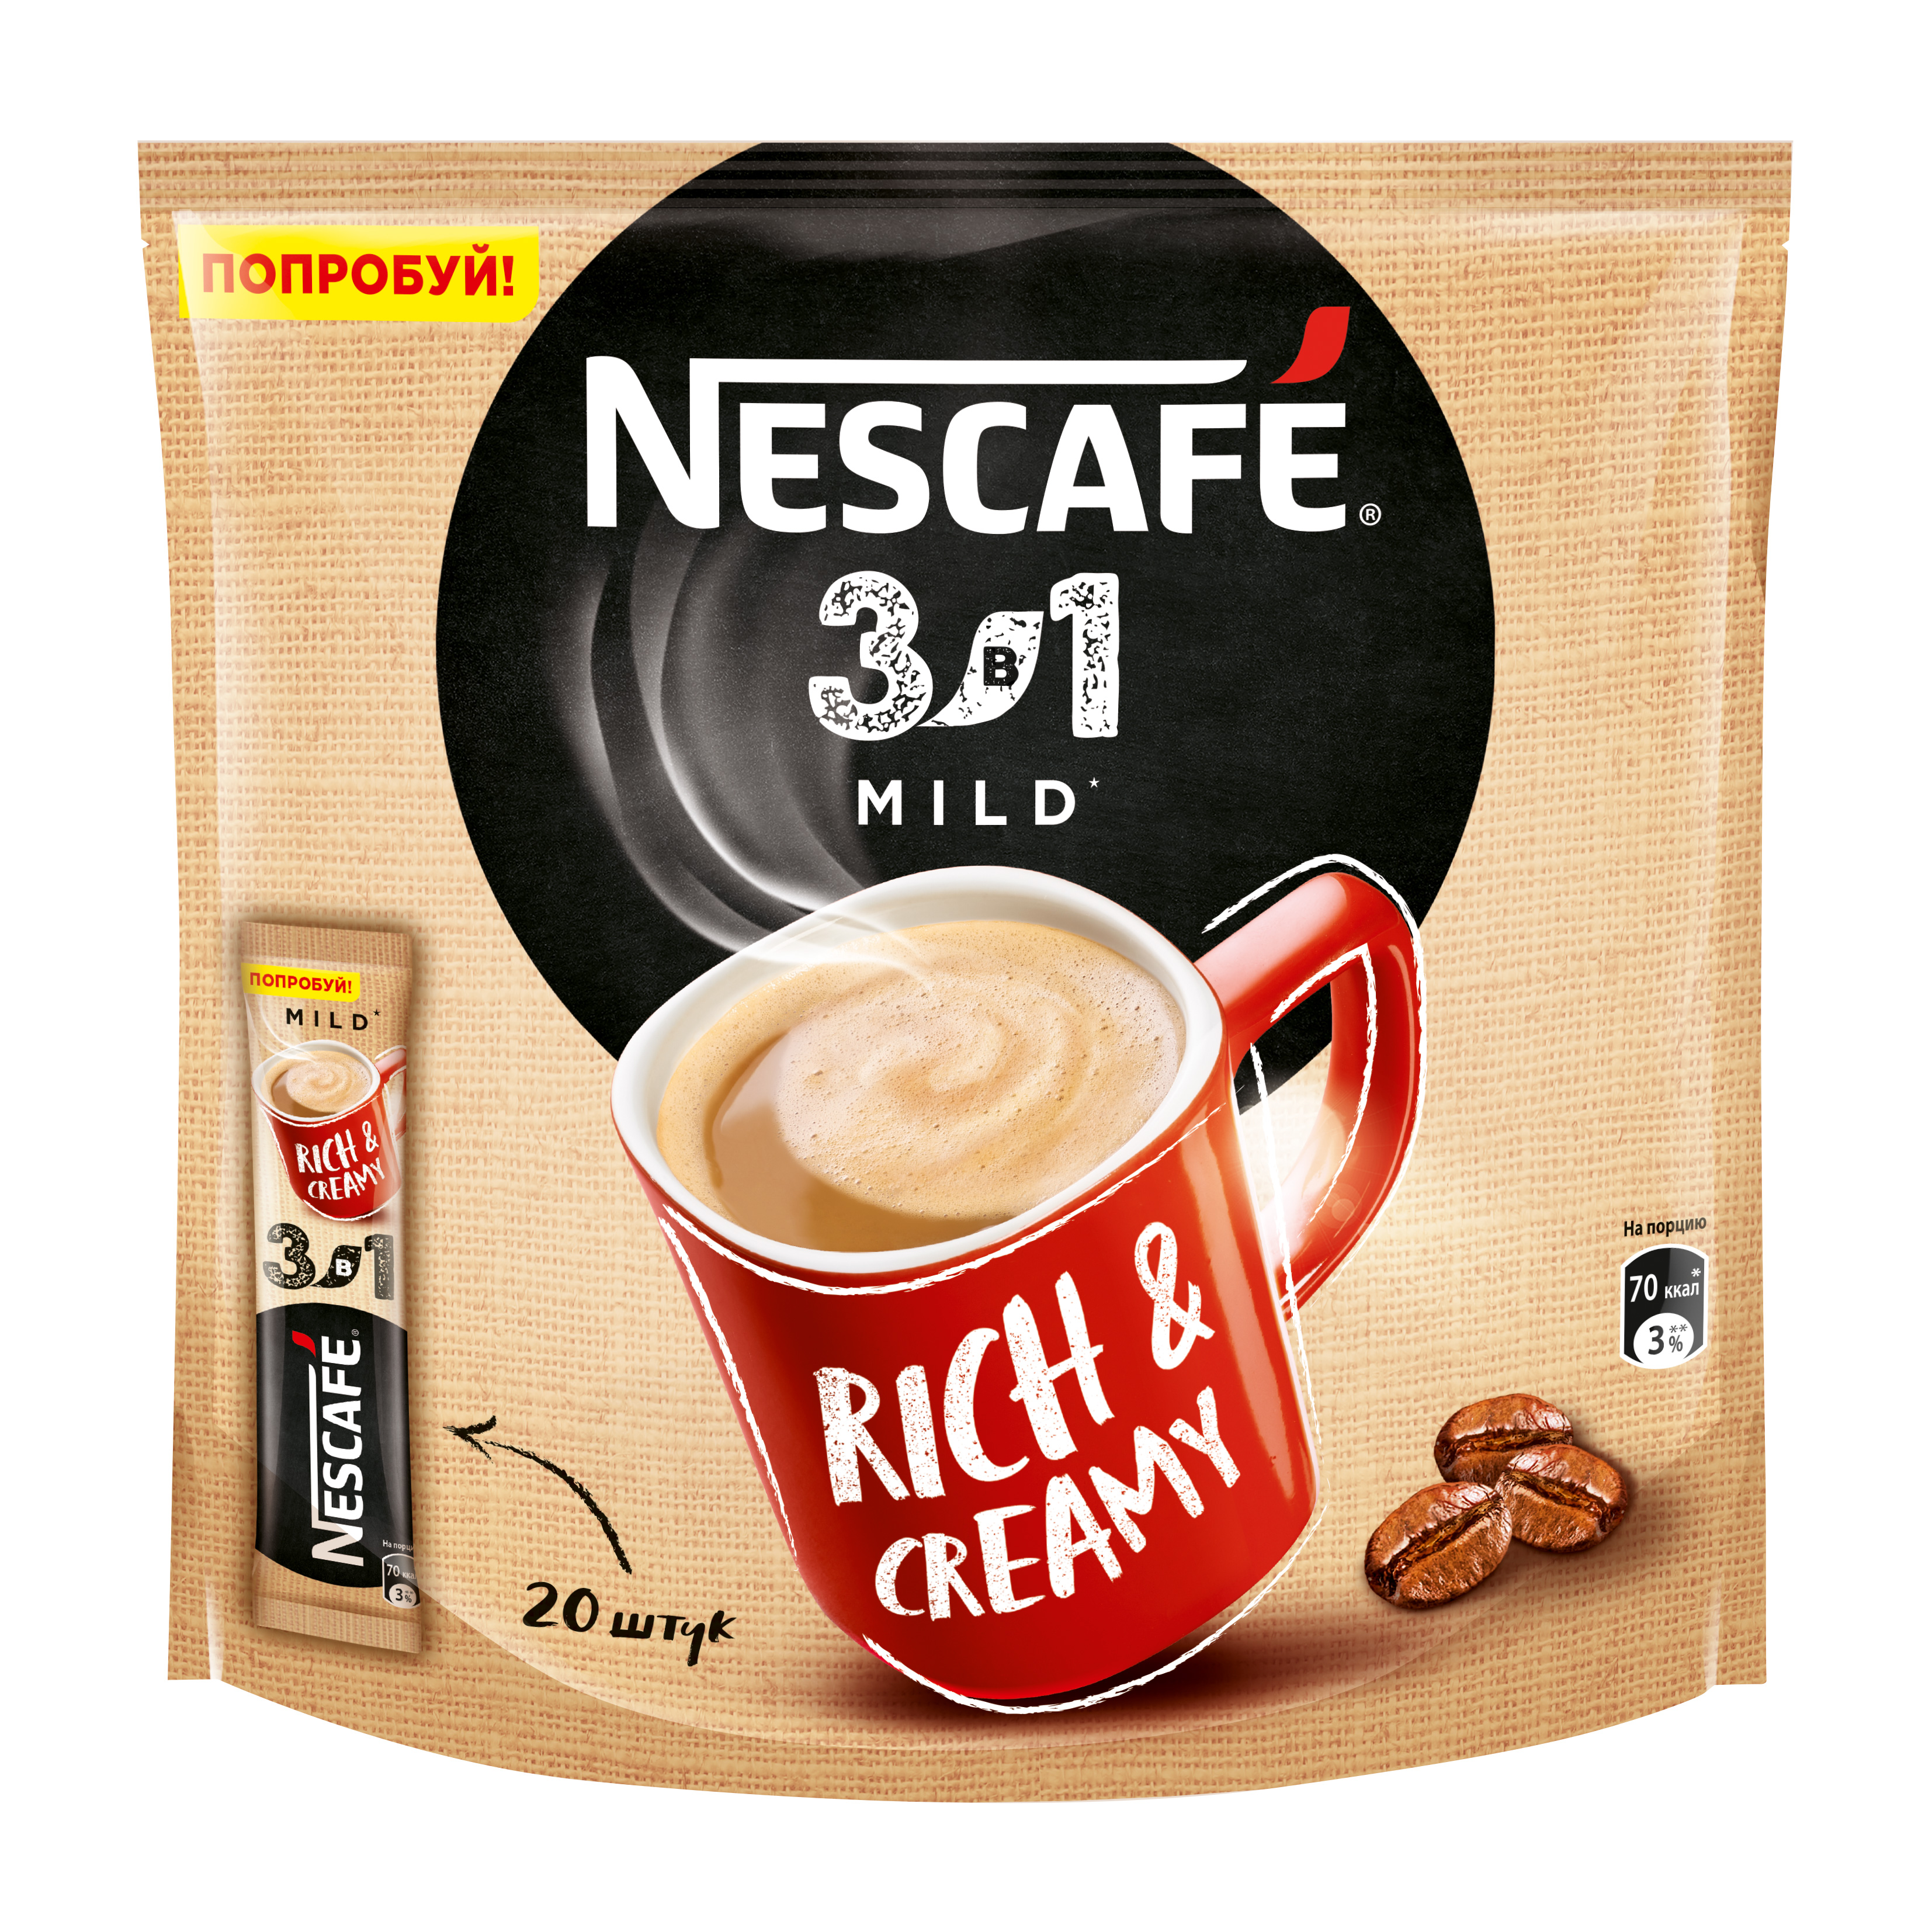 Кофе нескафе в пакетиках. Nescafe 3 в 1 mild. Кофе Нескафе в пакетиках 3 в 1. Кофе 3 в 1 Нескафе латте. Растворимый кофе в пакетиках Нескафе 3 в 1.